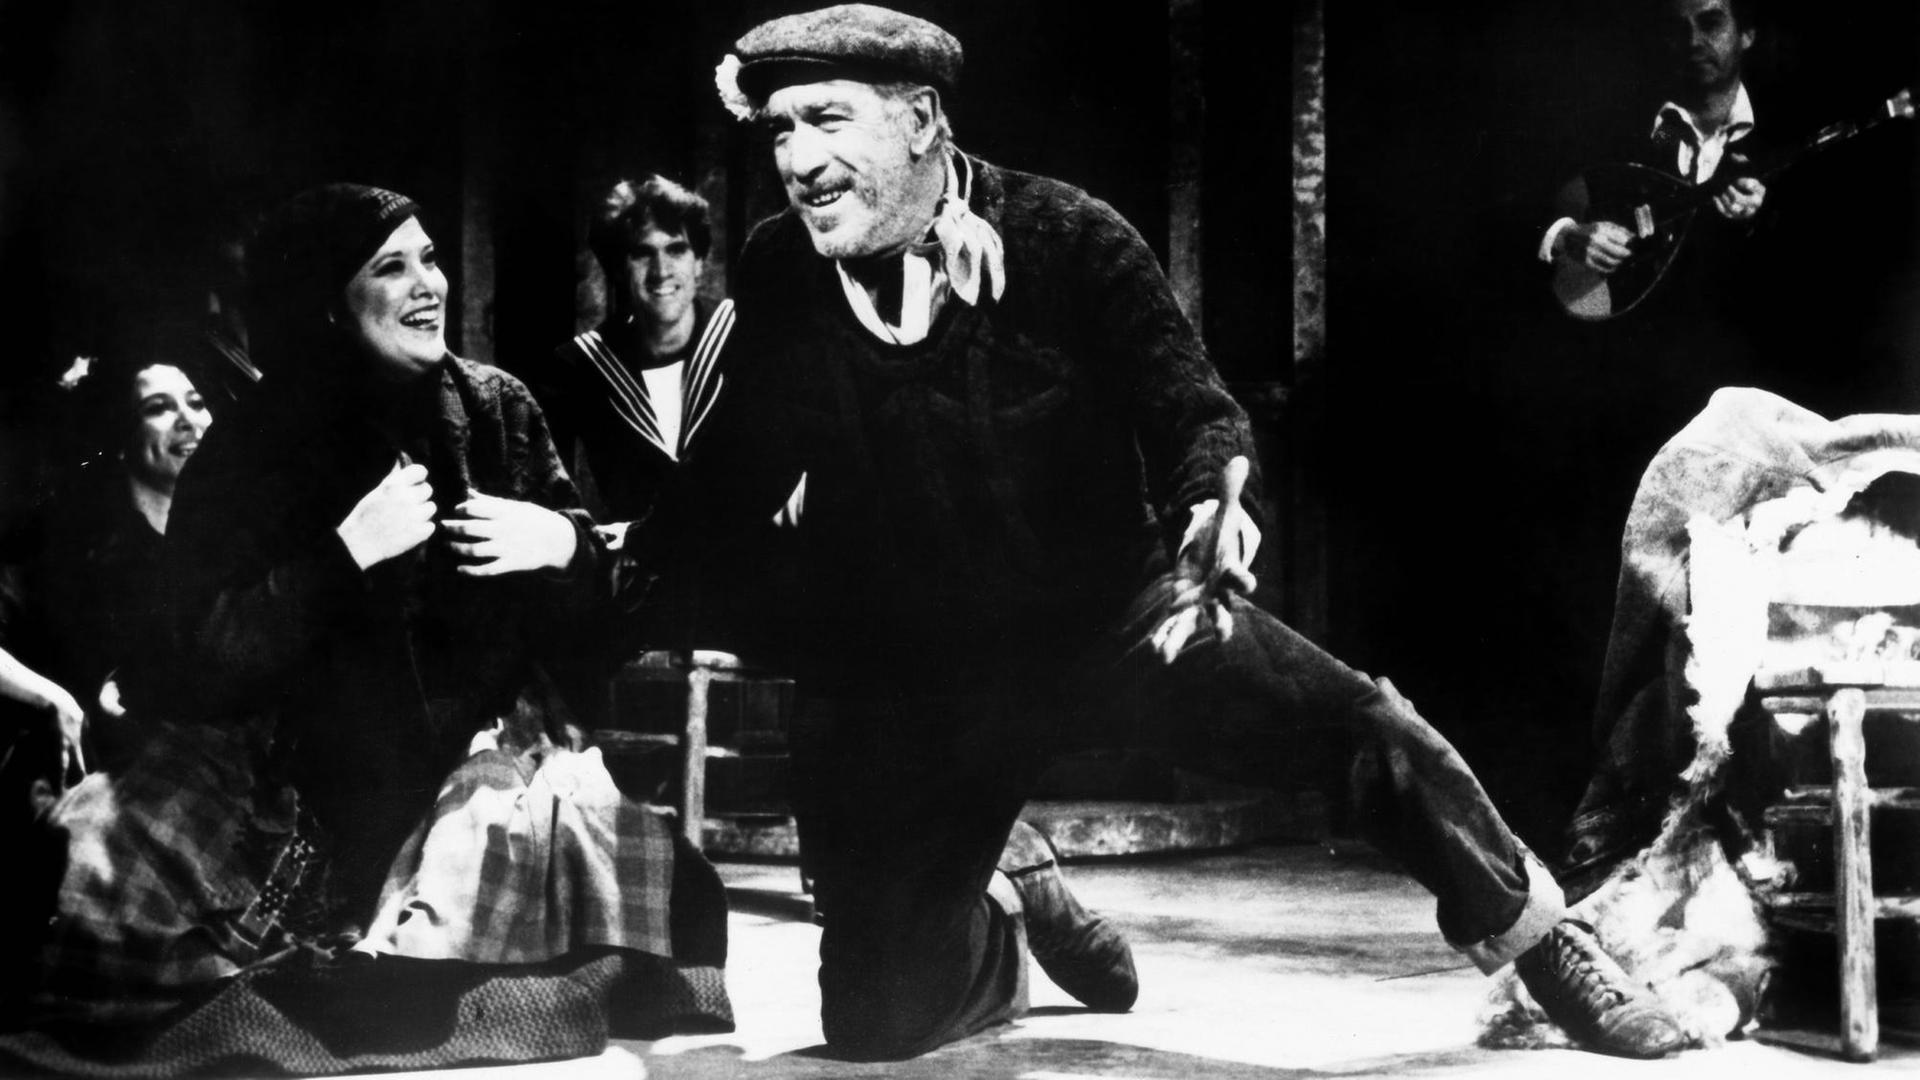 Anthony Quinn in einer Filmszene aus dem griechischen Spielfilm Alexis Zorbas aka. Zorba the Greek von 1964. Regie führte Michael Cacoyannis.